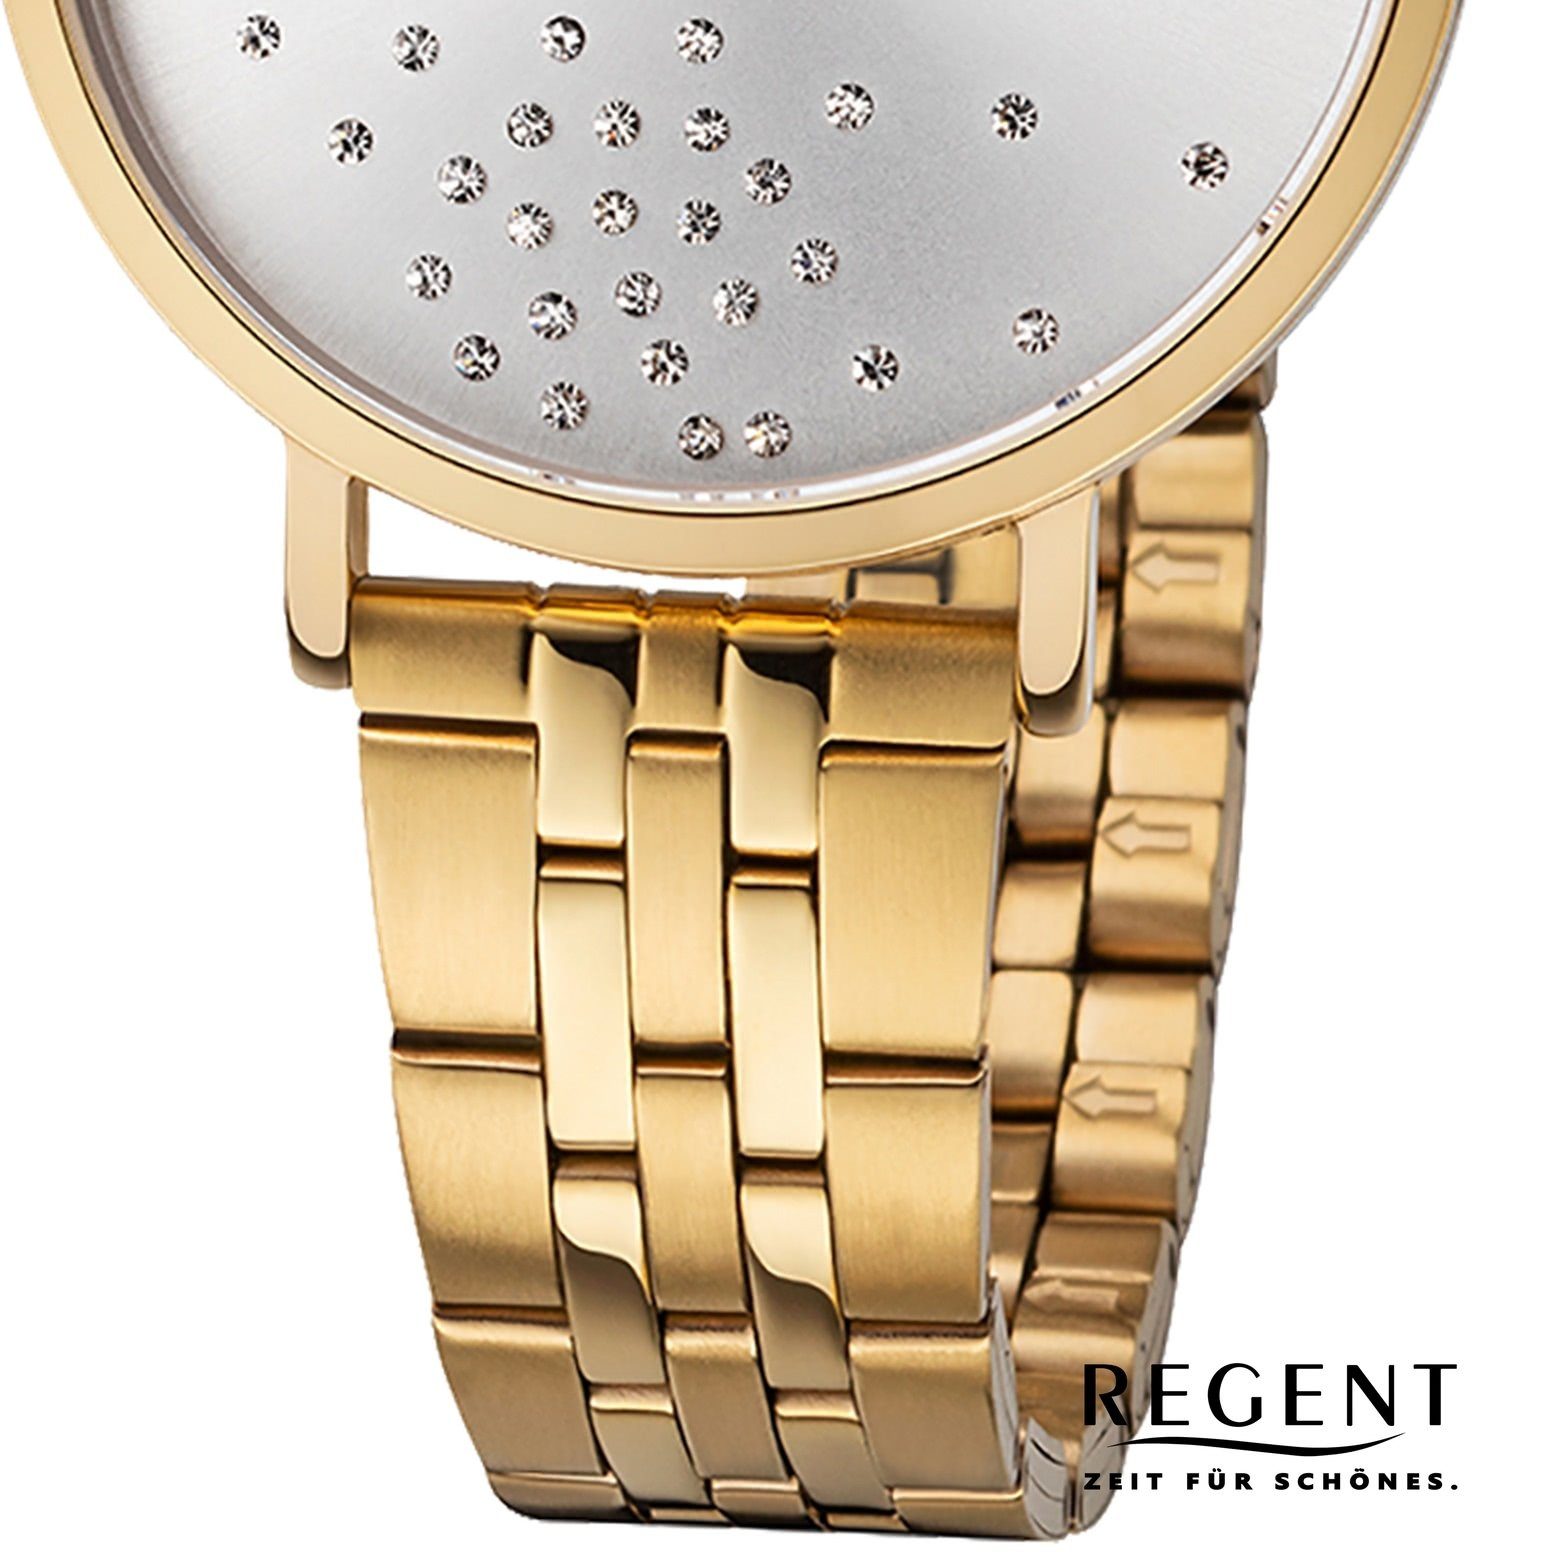 Uhr mittel 36mm), Armbanduhr Regent (ca. Edelstahlarmband BA-596 Edelstahl, Regent Damen Damen rund, Quarzuhr